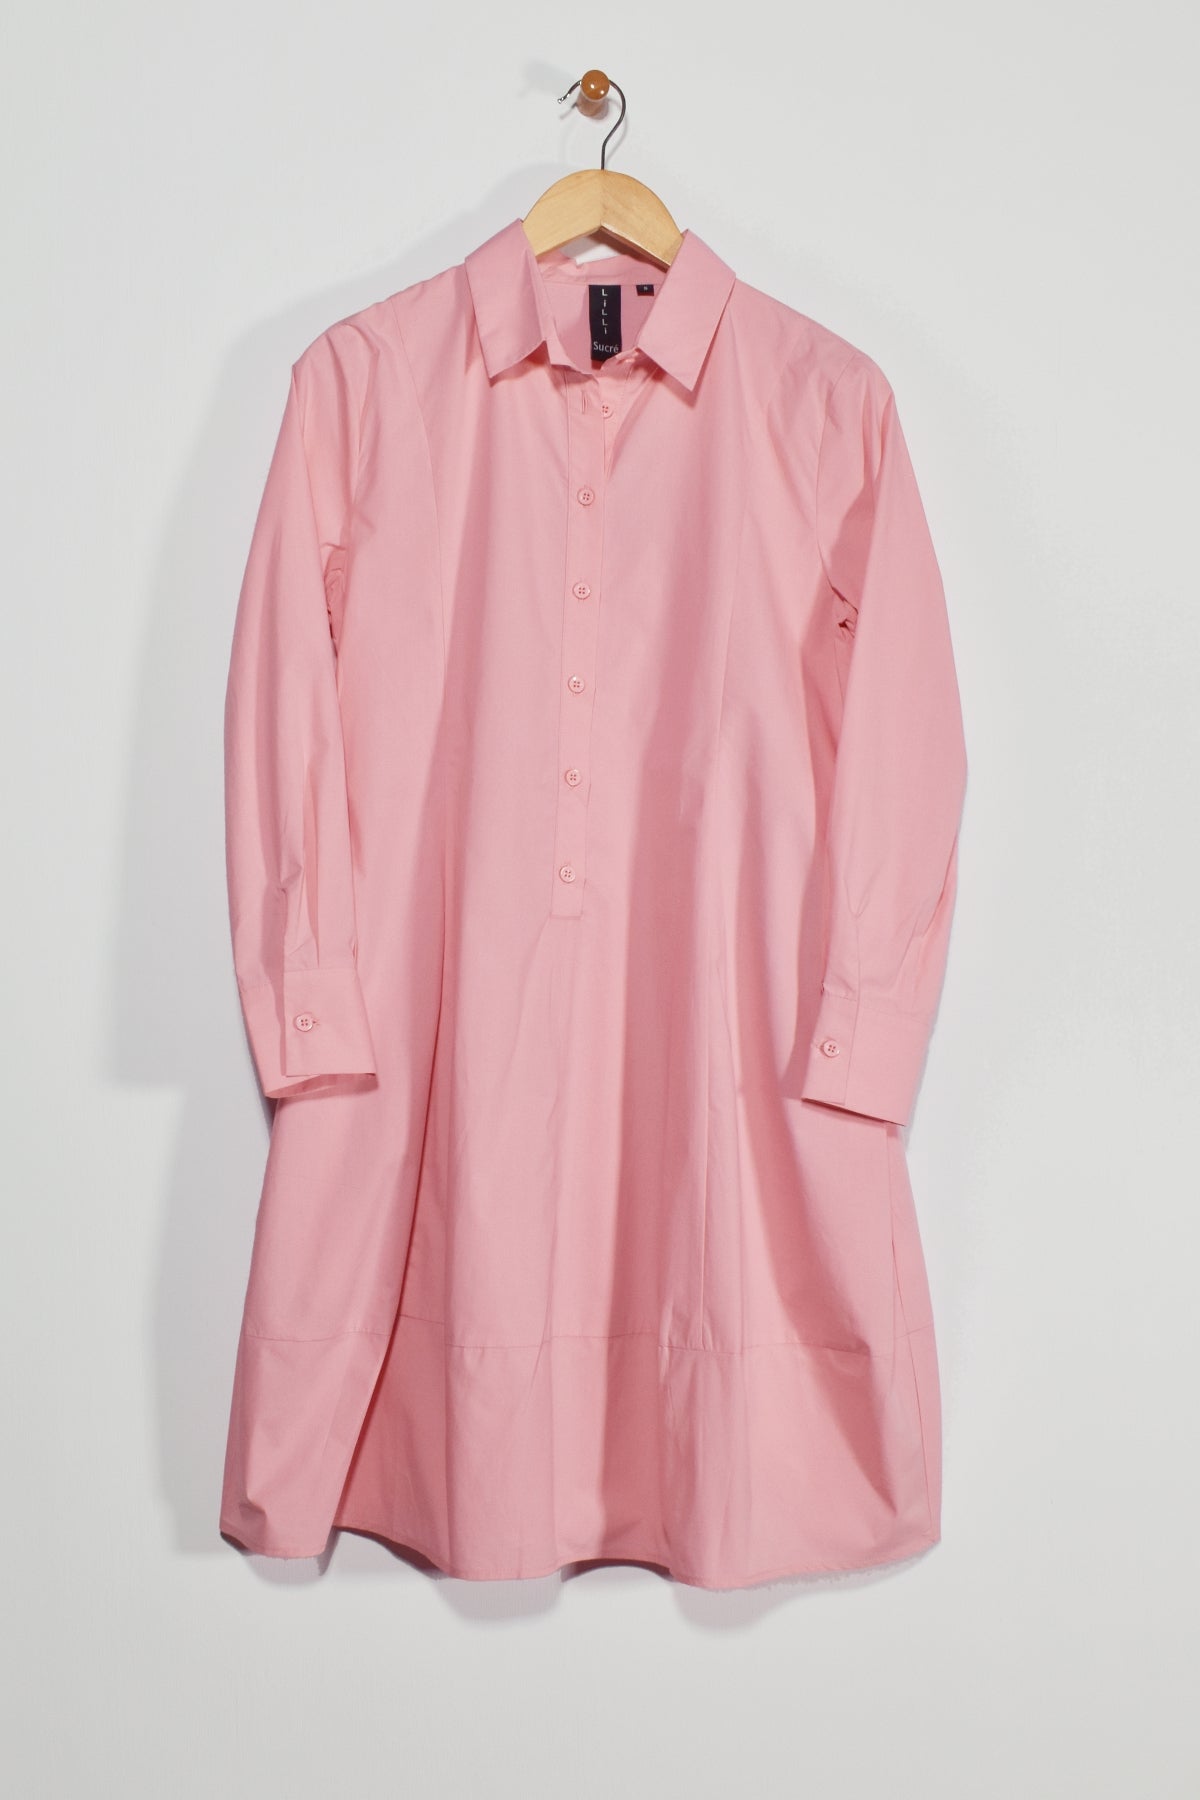 38” Long Sleeve Shirtdress with Balloon Skirt Lilli Sucré